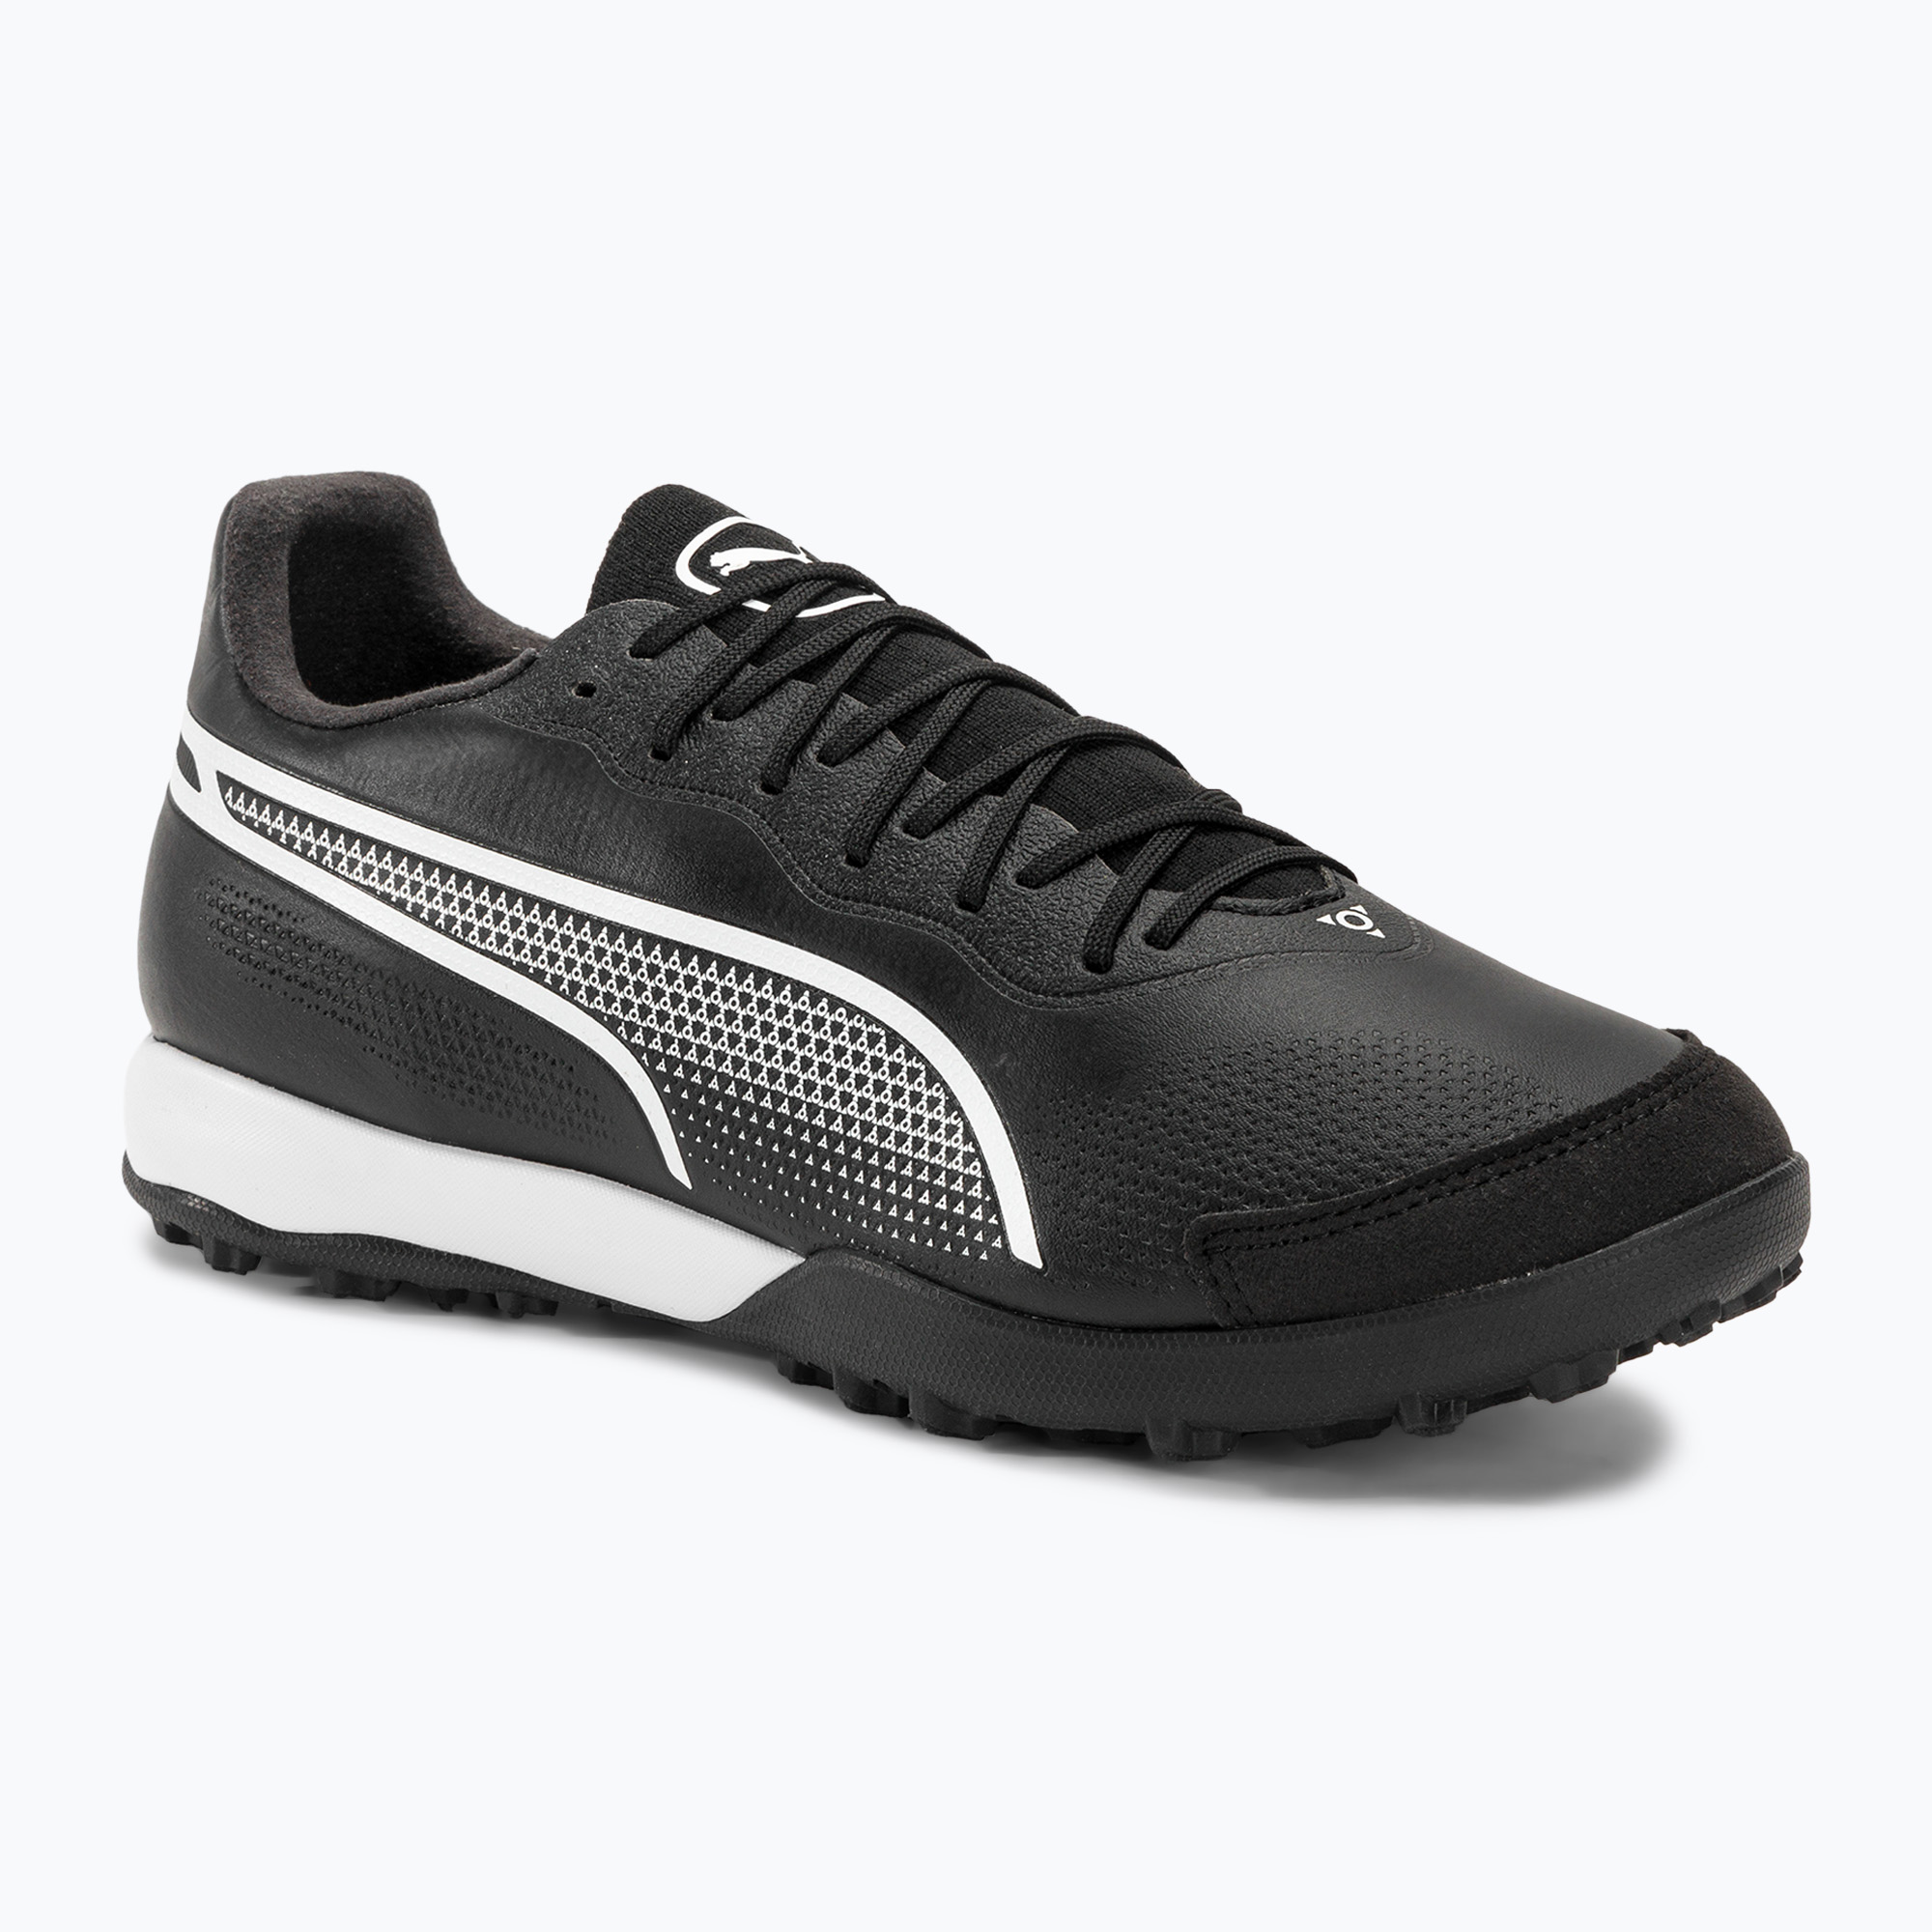 Мъжки футболни обувки PUMA King Pro TT puma black/puma white